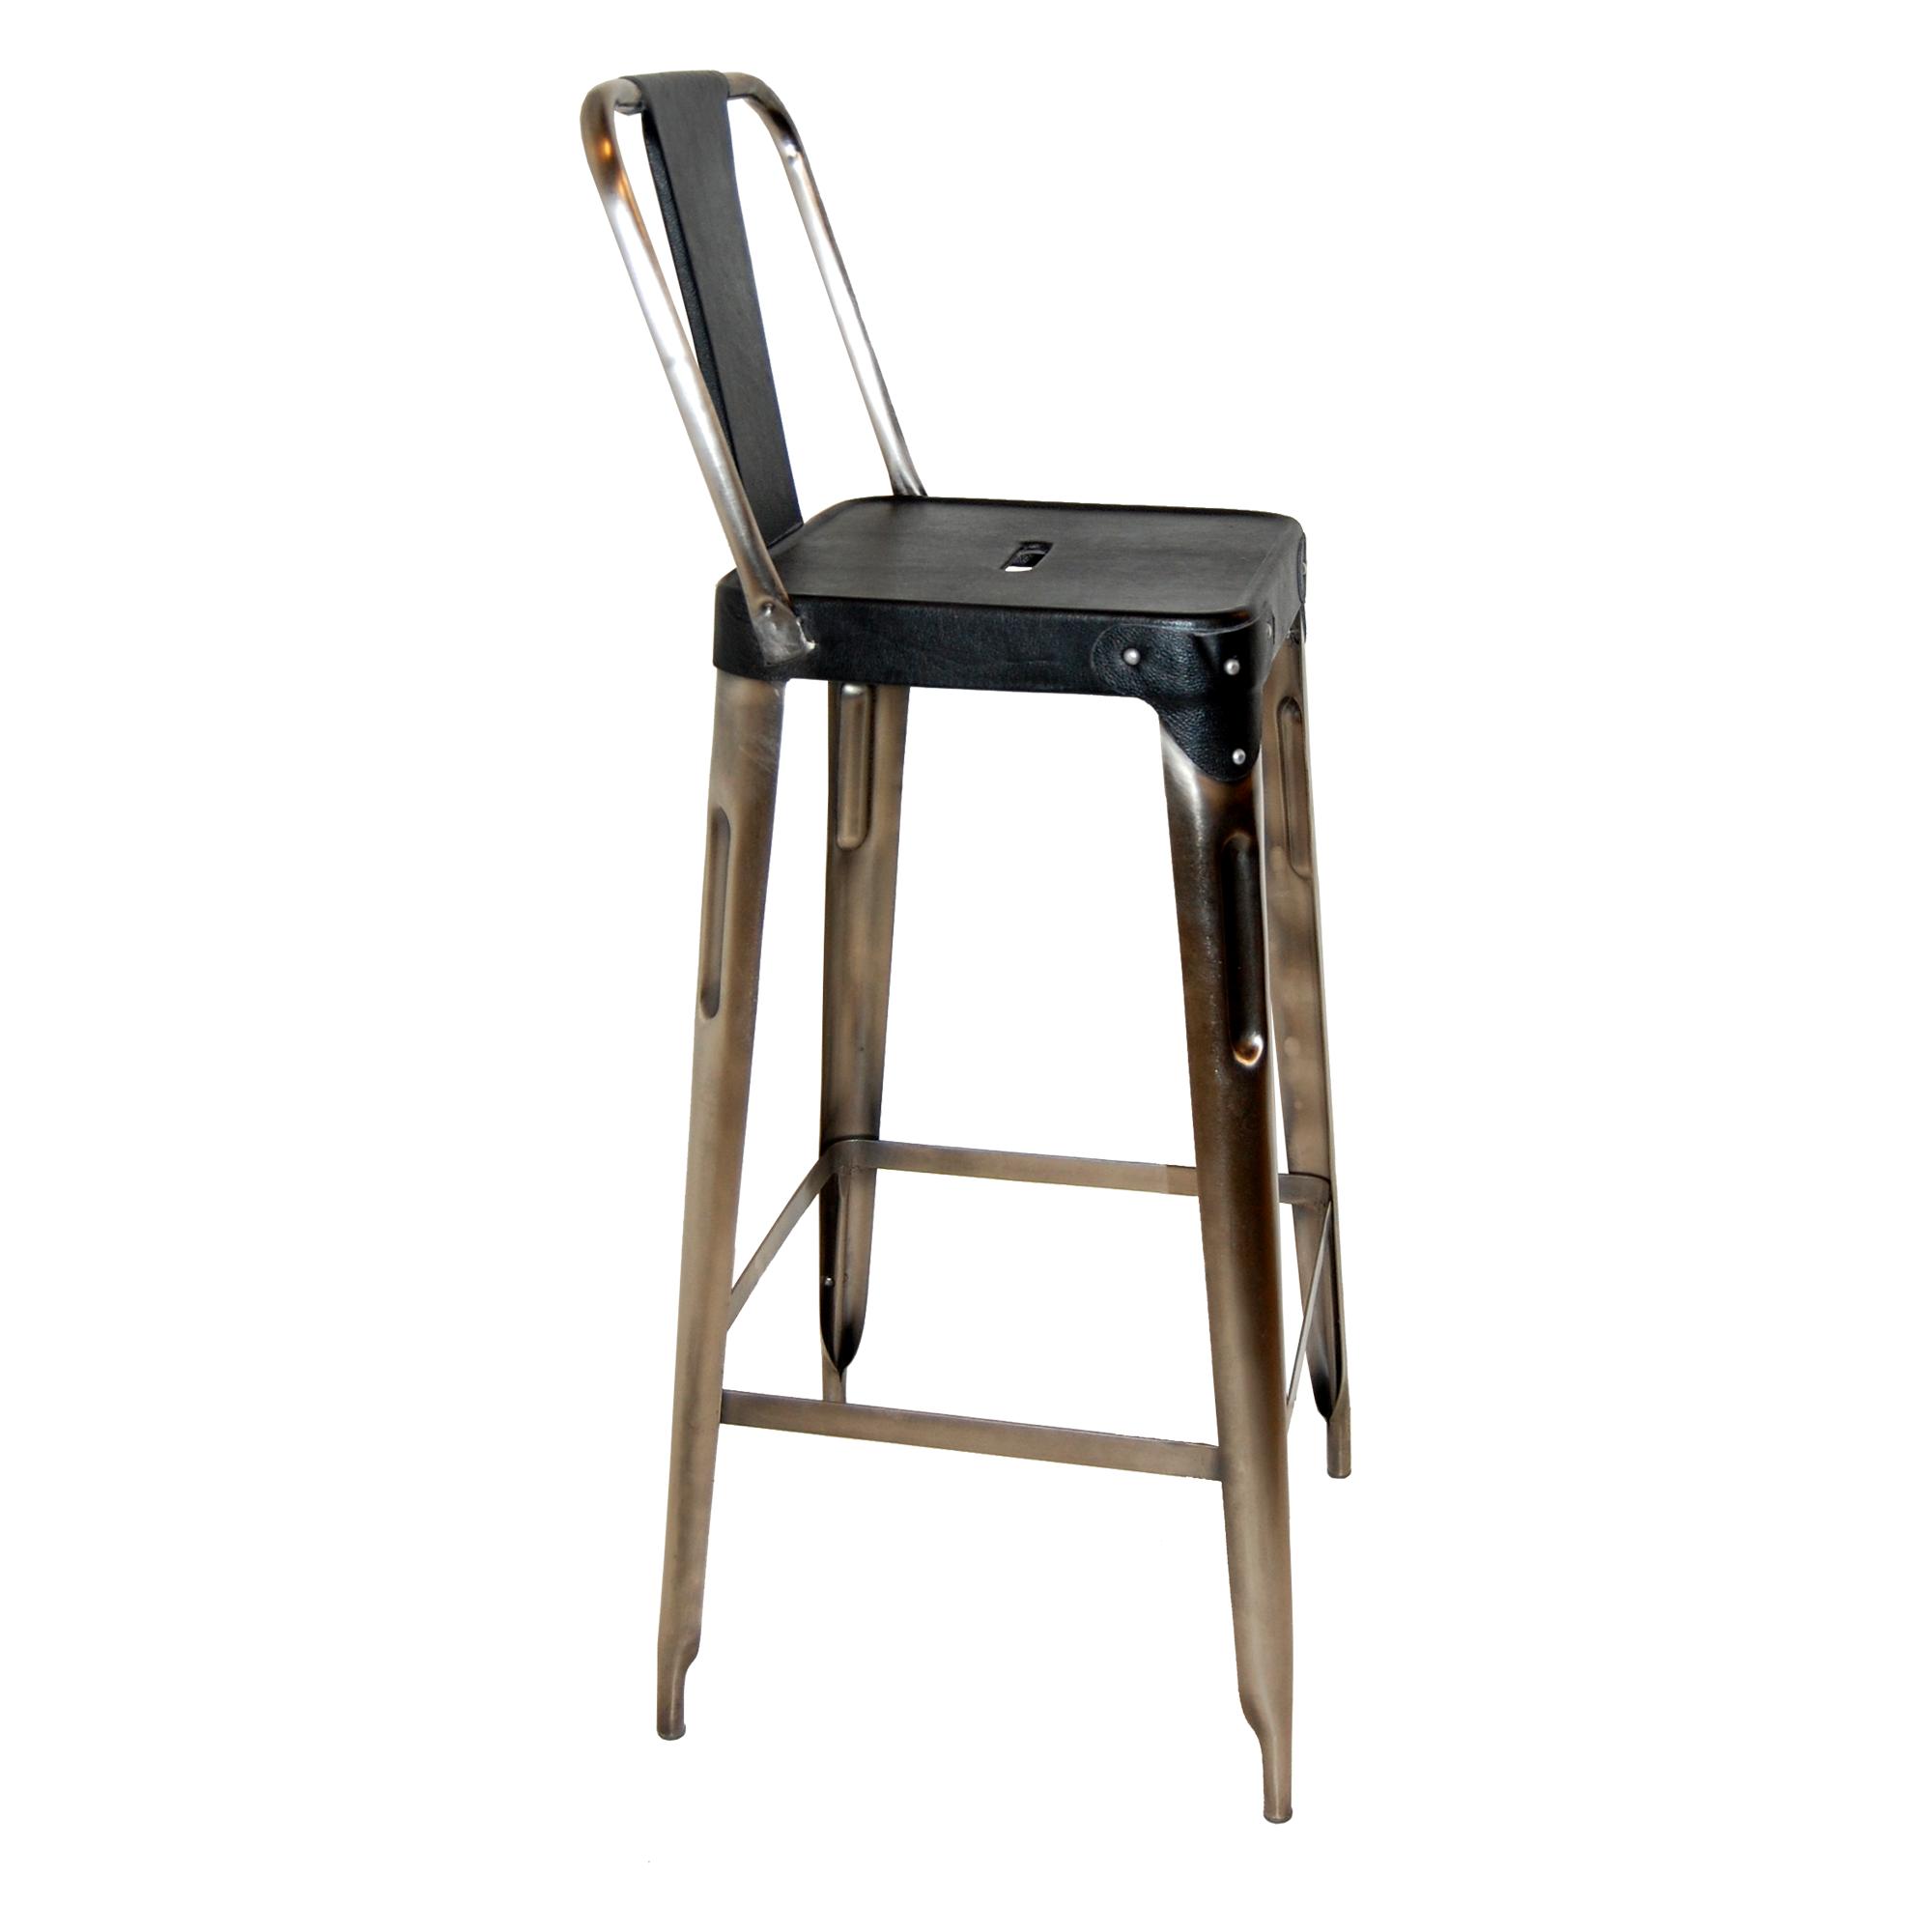  Høj barstol m. ryglæn - læder - sort fra Trademark Living i Jern (Varenr: M11070)